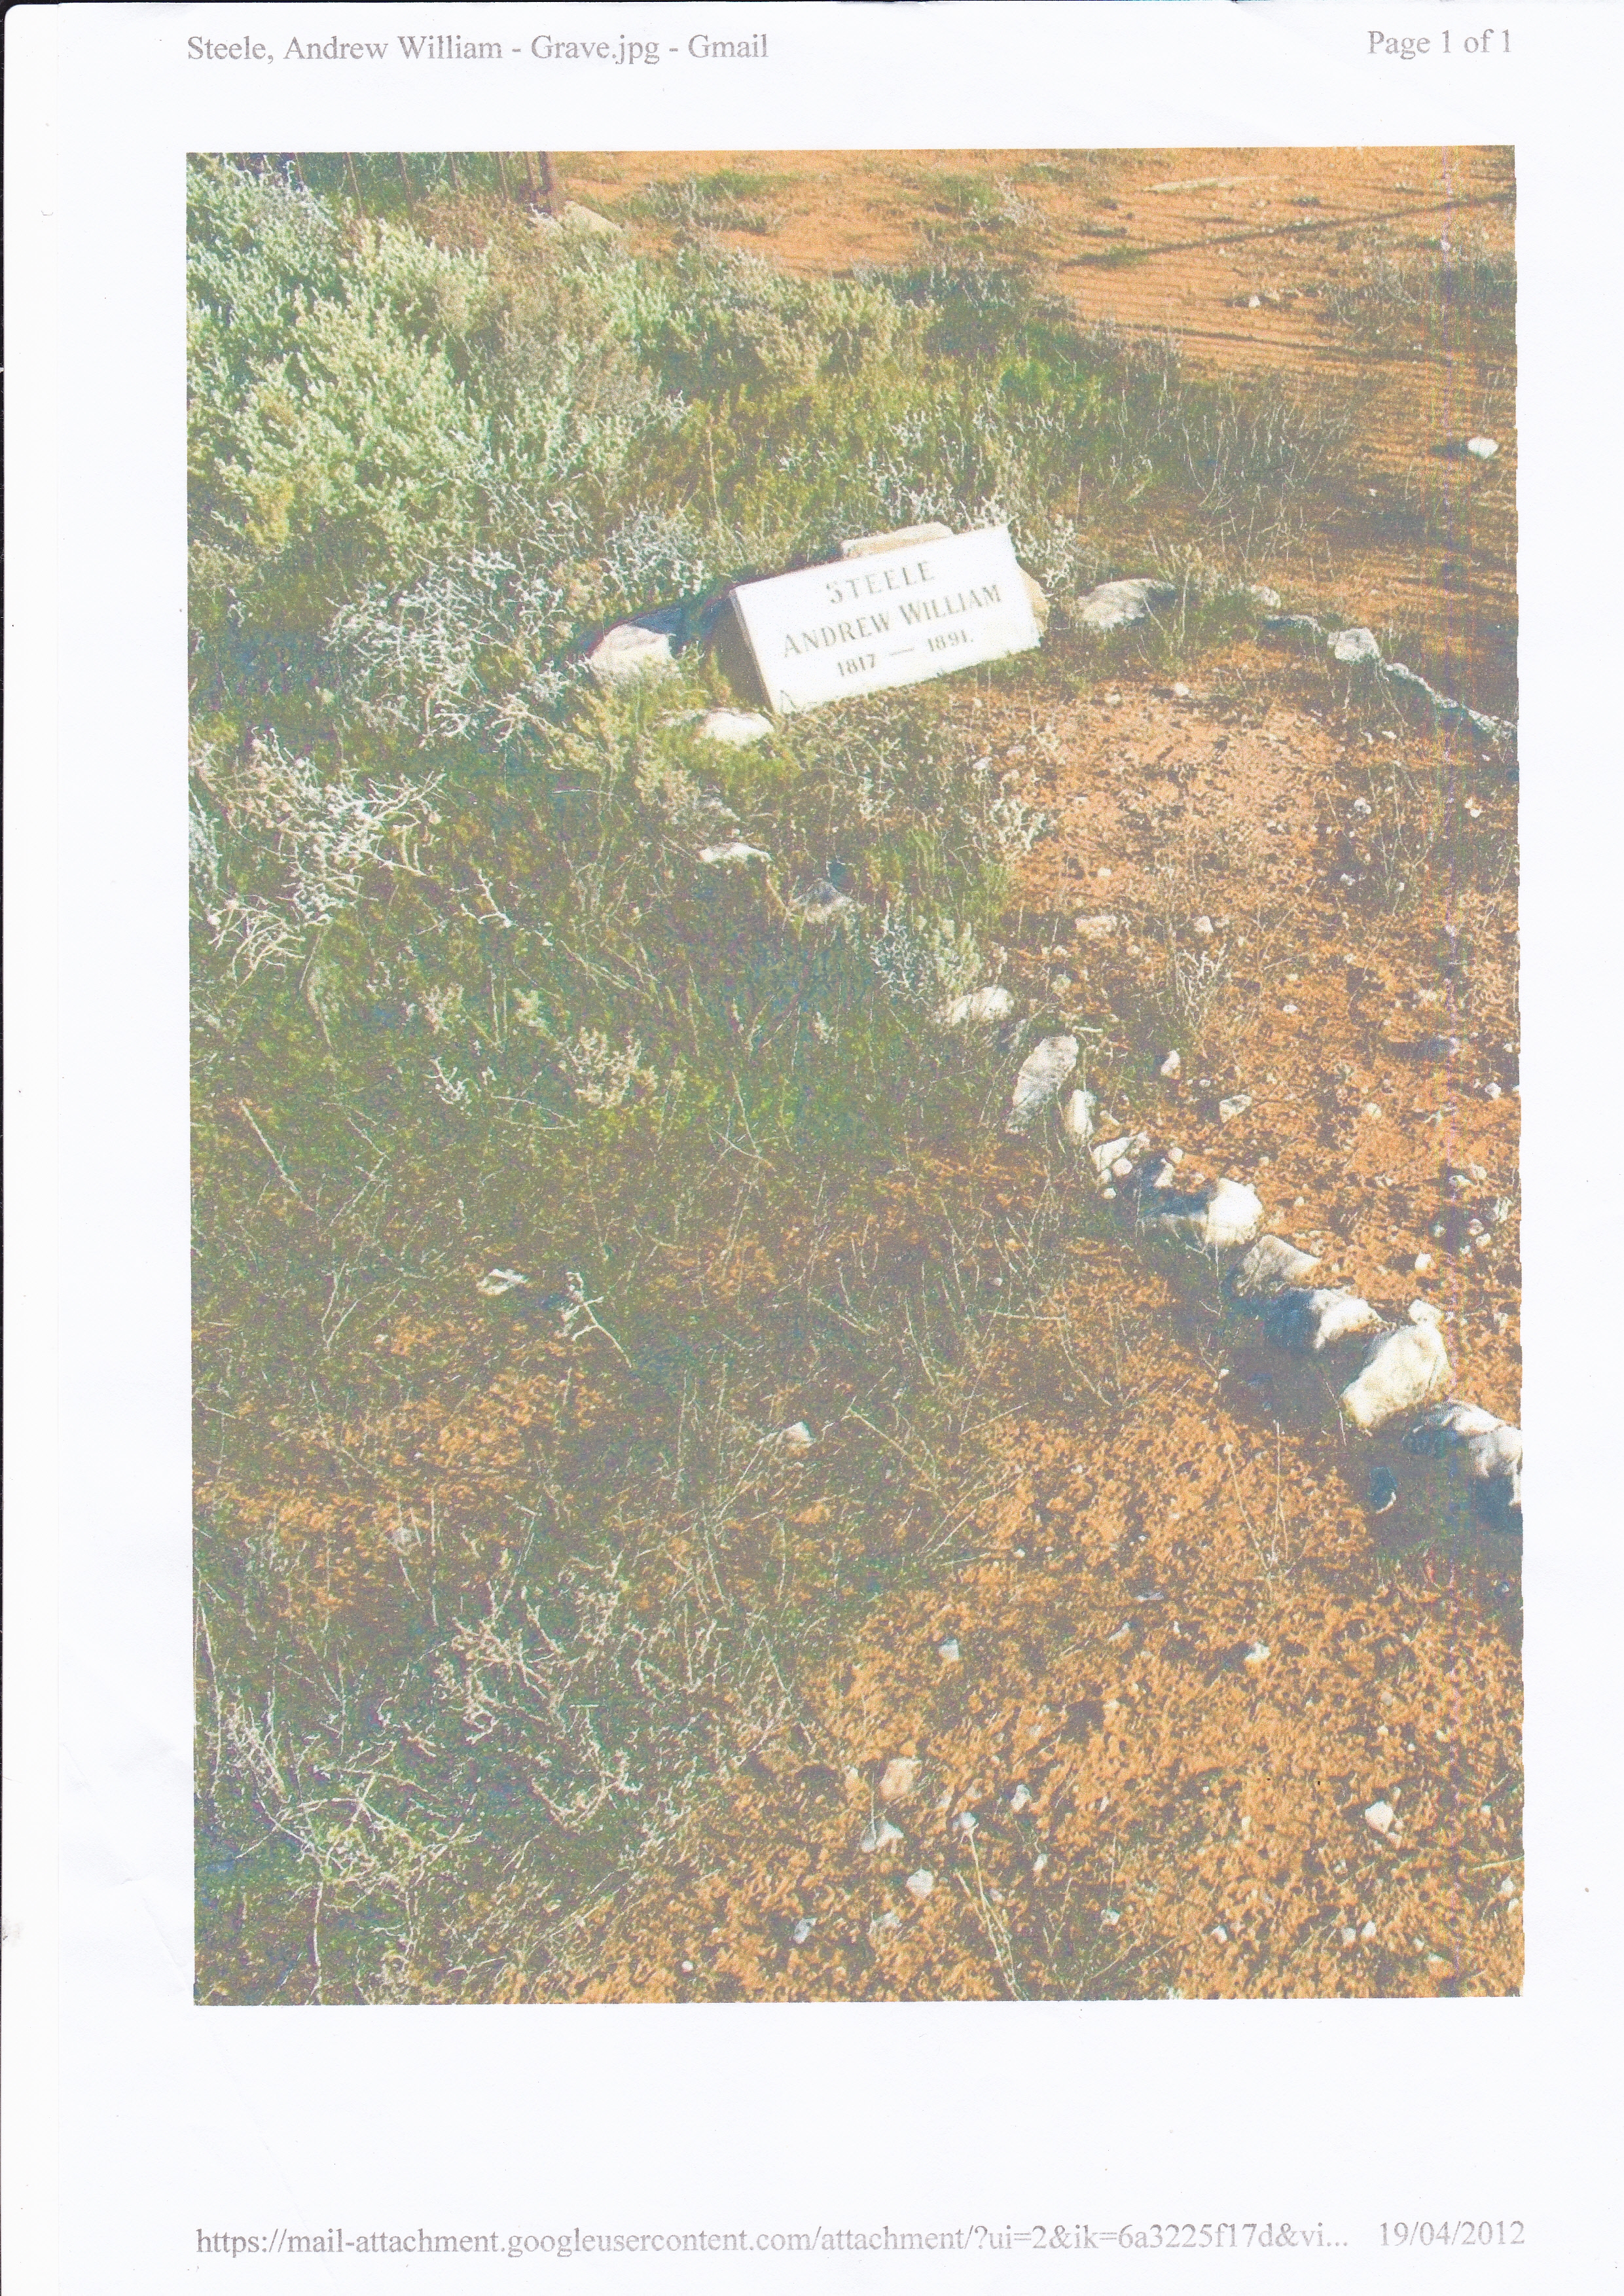 Andrew Wiliam Steele gravesite